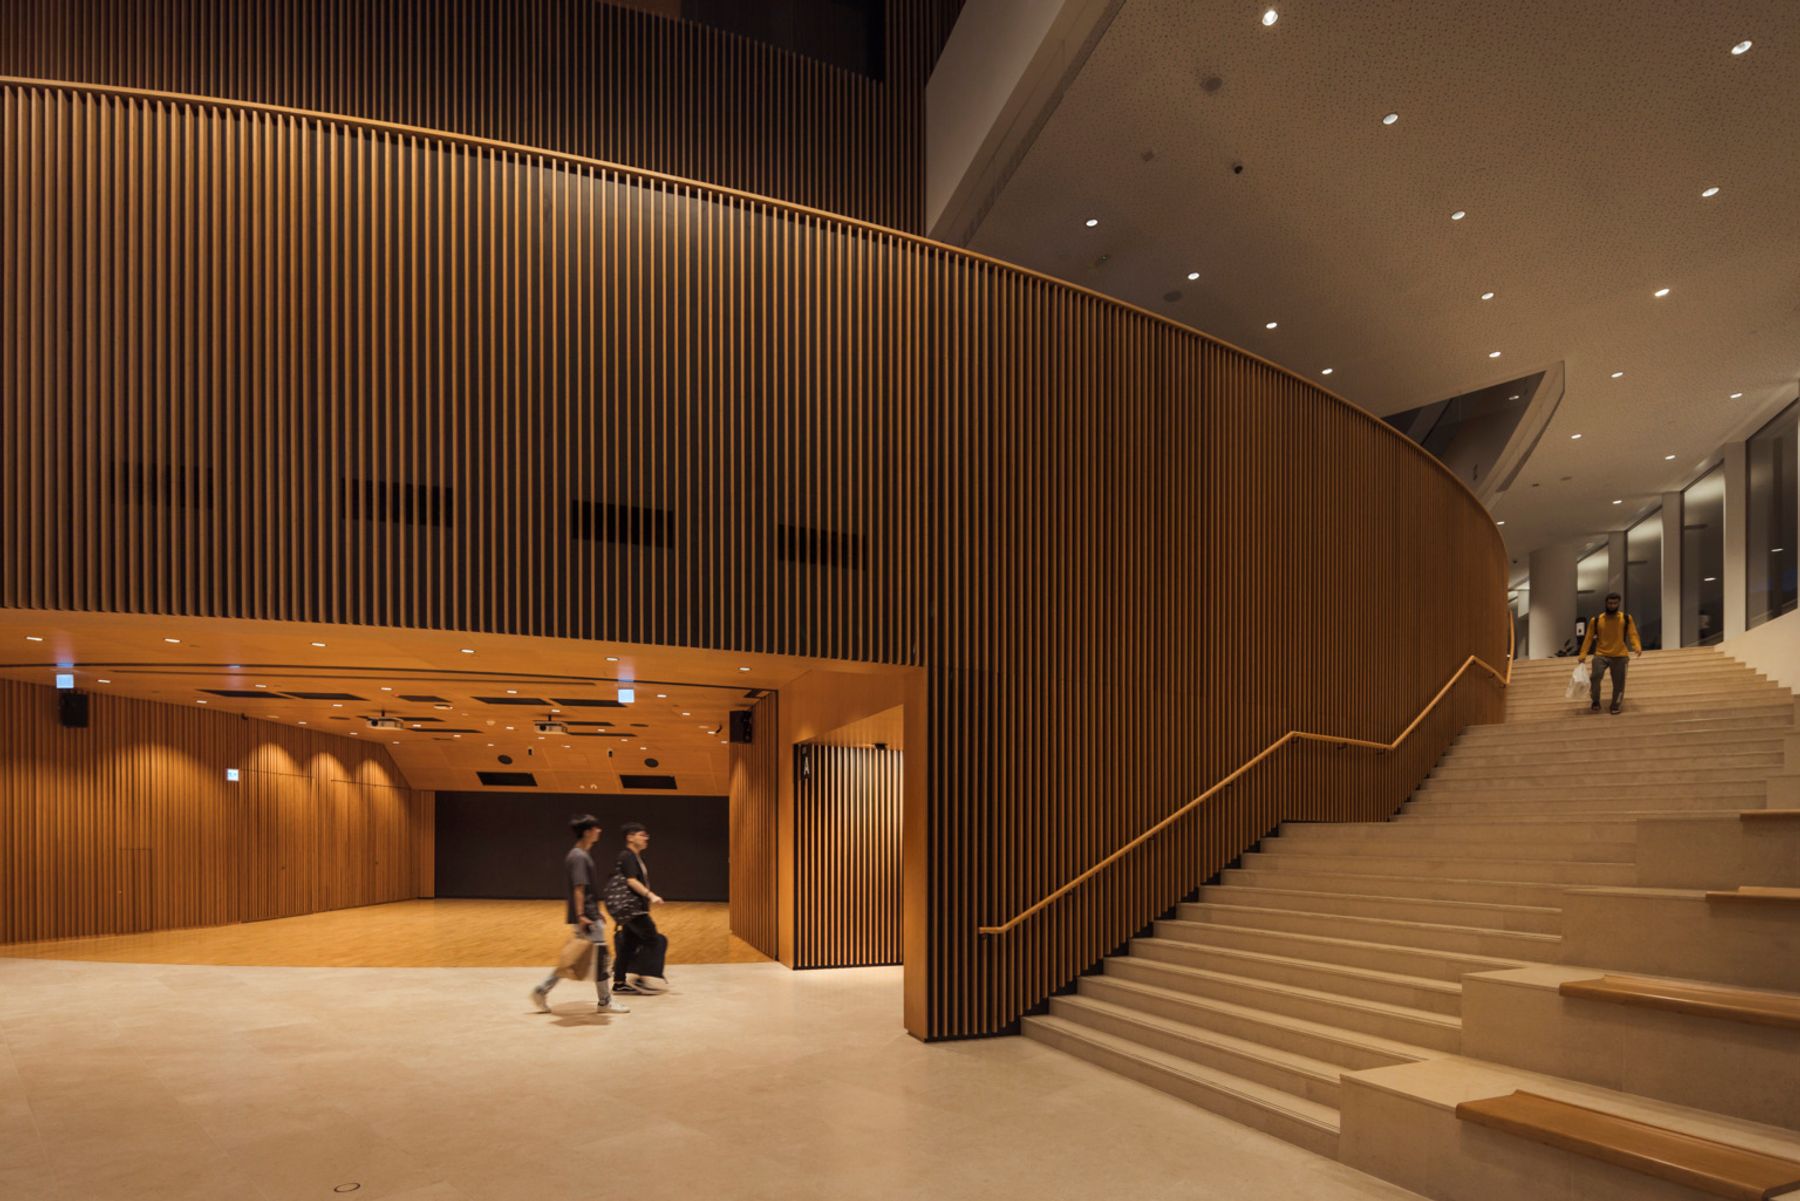 Universidad de Ciencia y Tecnología, Auditorio Shaw, Hong Kong. Arquitectura: Henning Larsen / Wong Tung and Partners (dirección). Diseño de iluminación: Inhabit group. Fotografía: Jackie Chan.